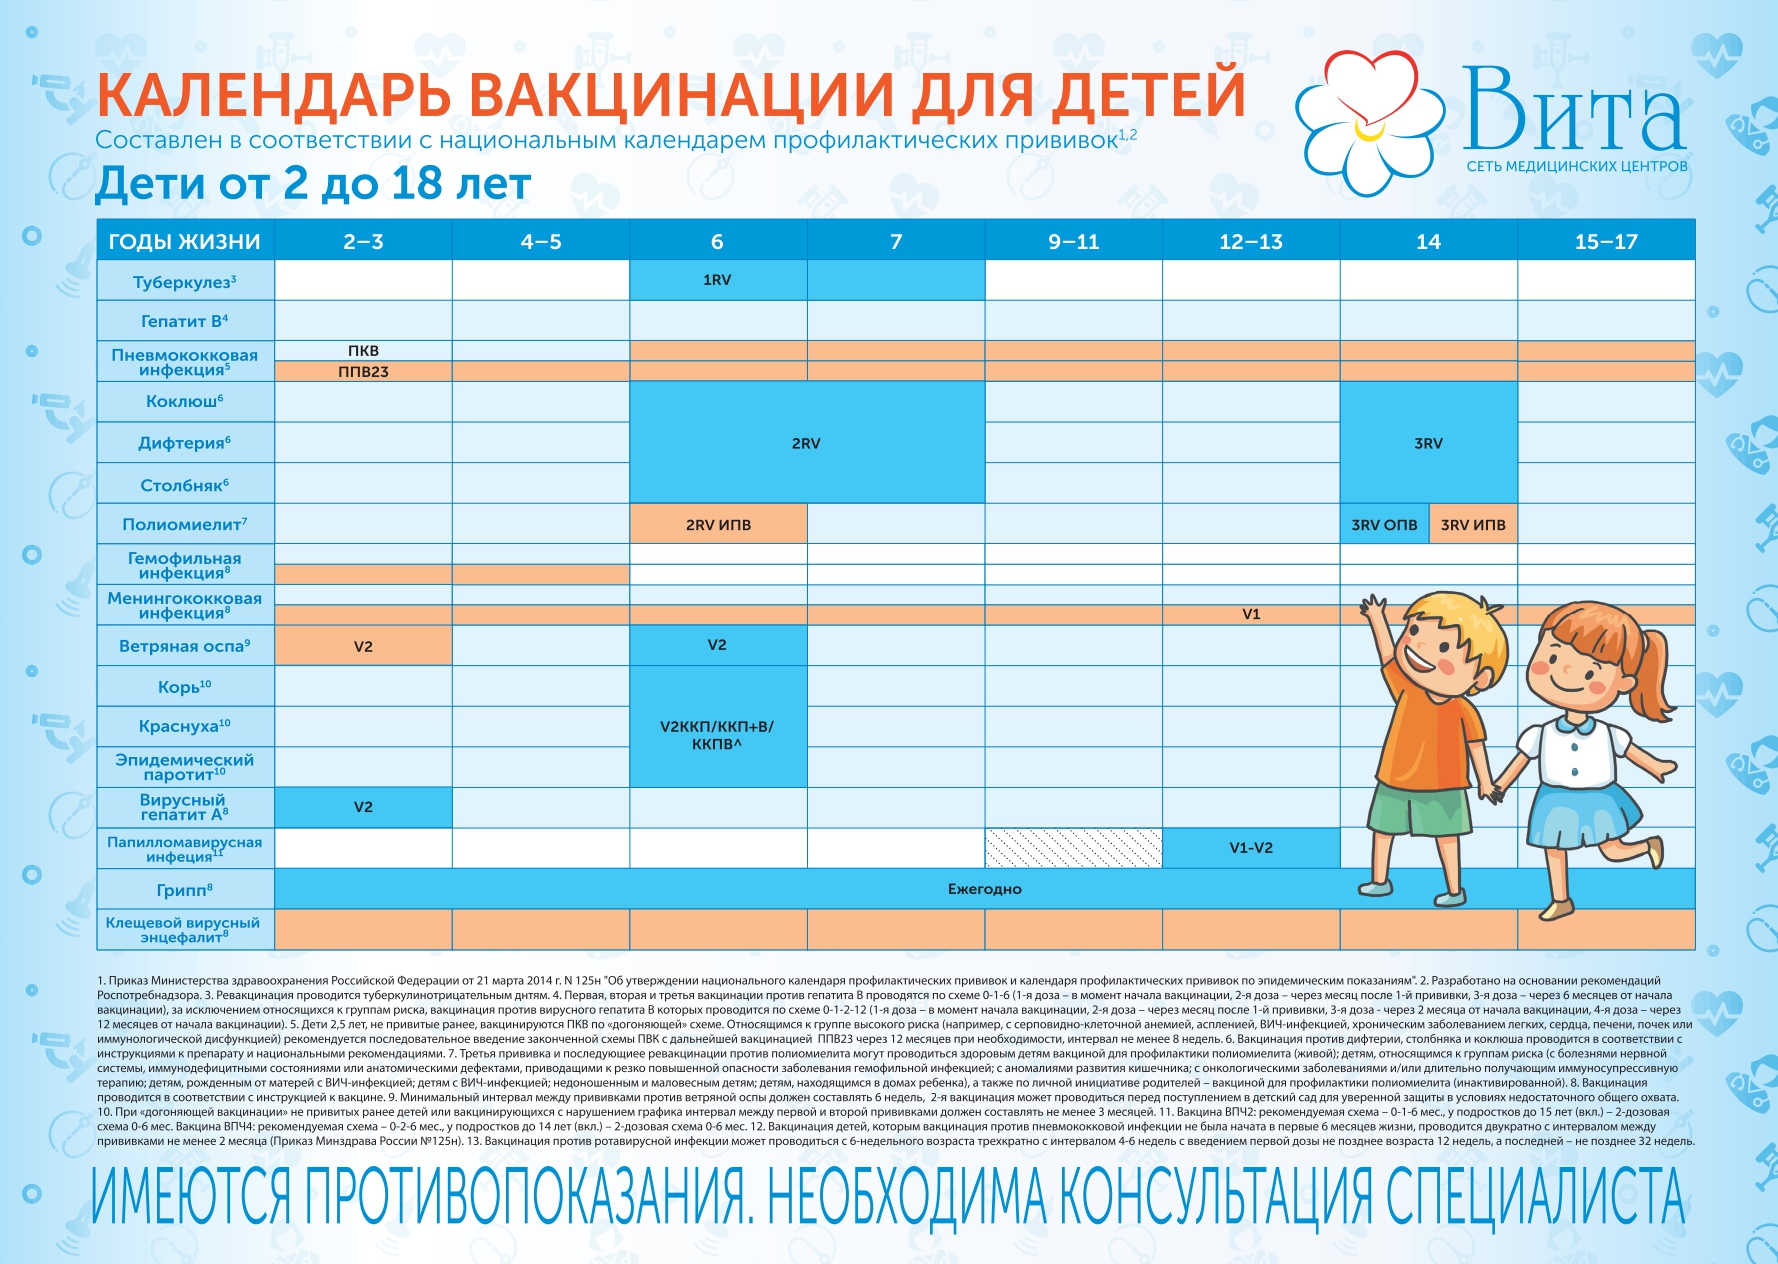 Сколько прививок делают адсм. Календарь прививок для детей в России. АДСМ прививка календарь прививок. Календарь прививок для всех взрослых. Плановые осмотры детей после года.